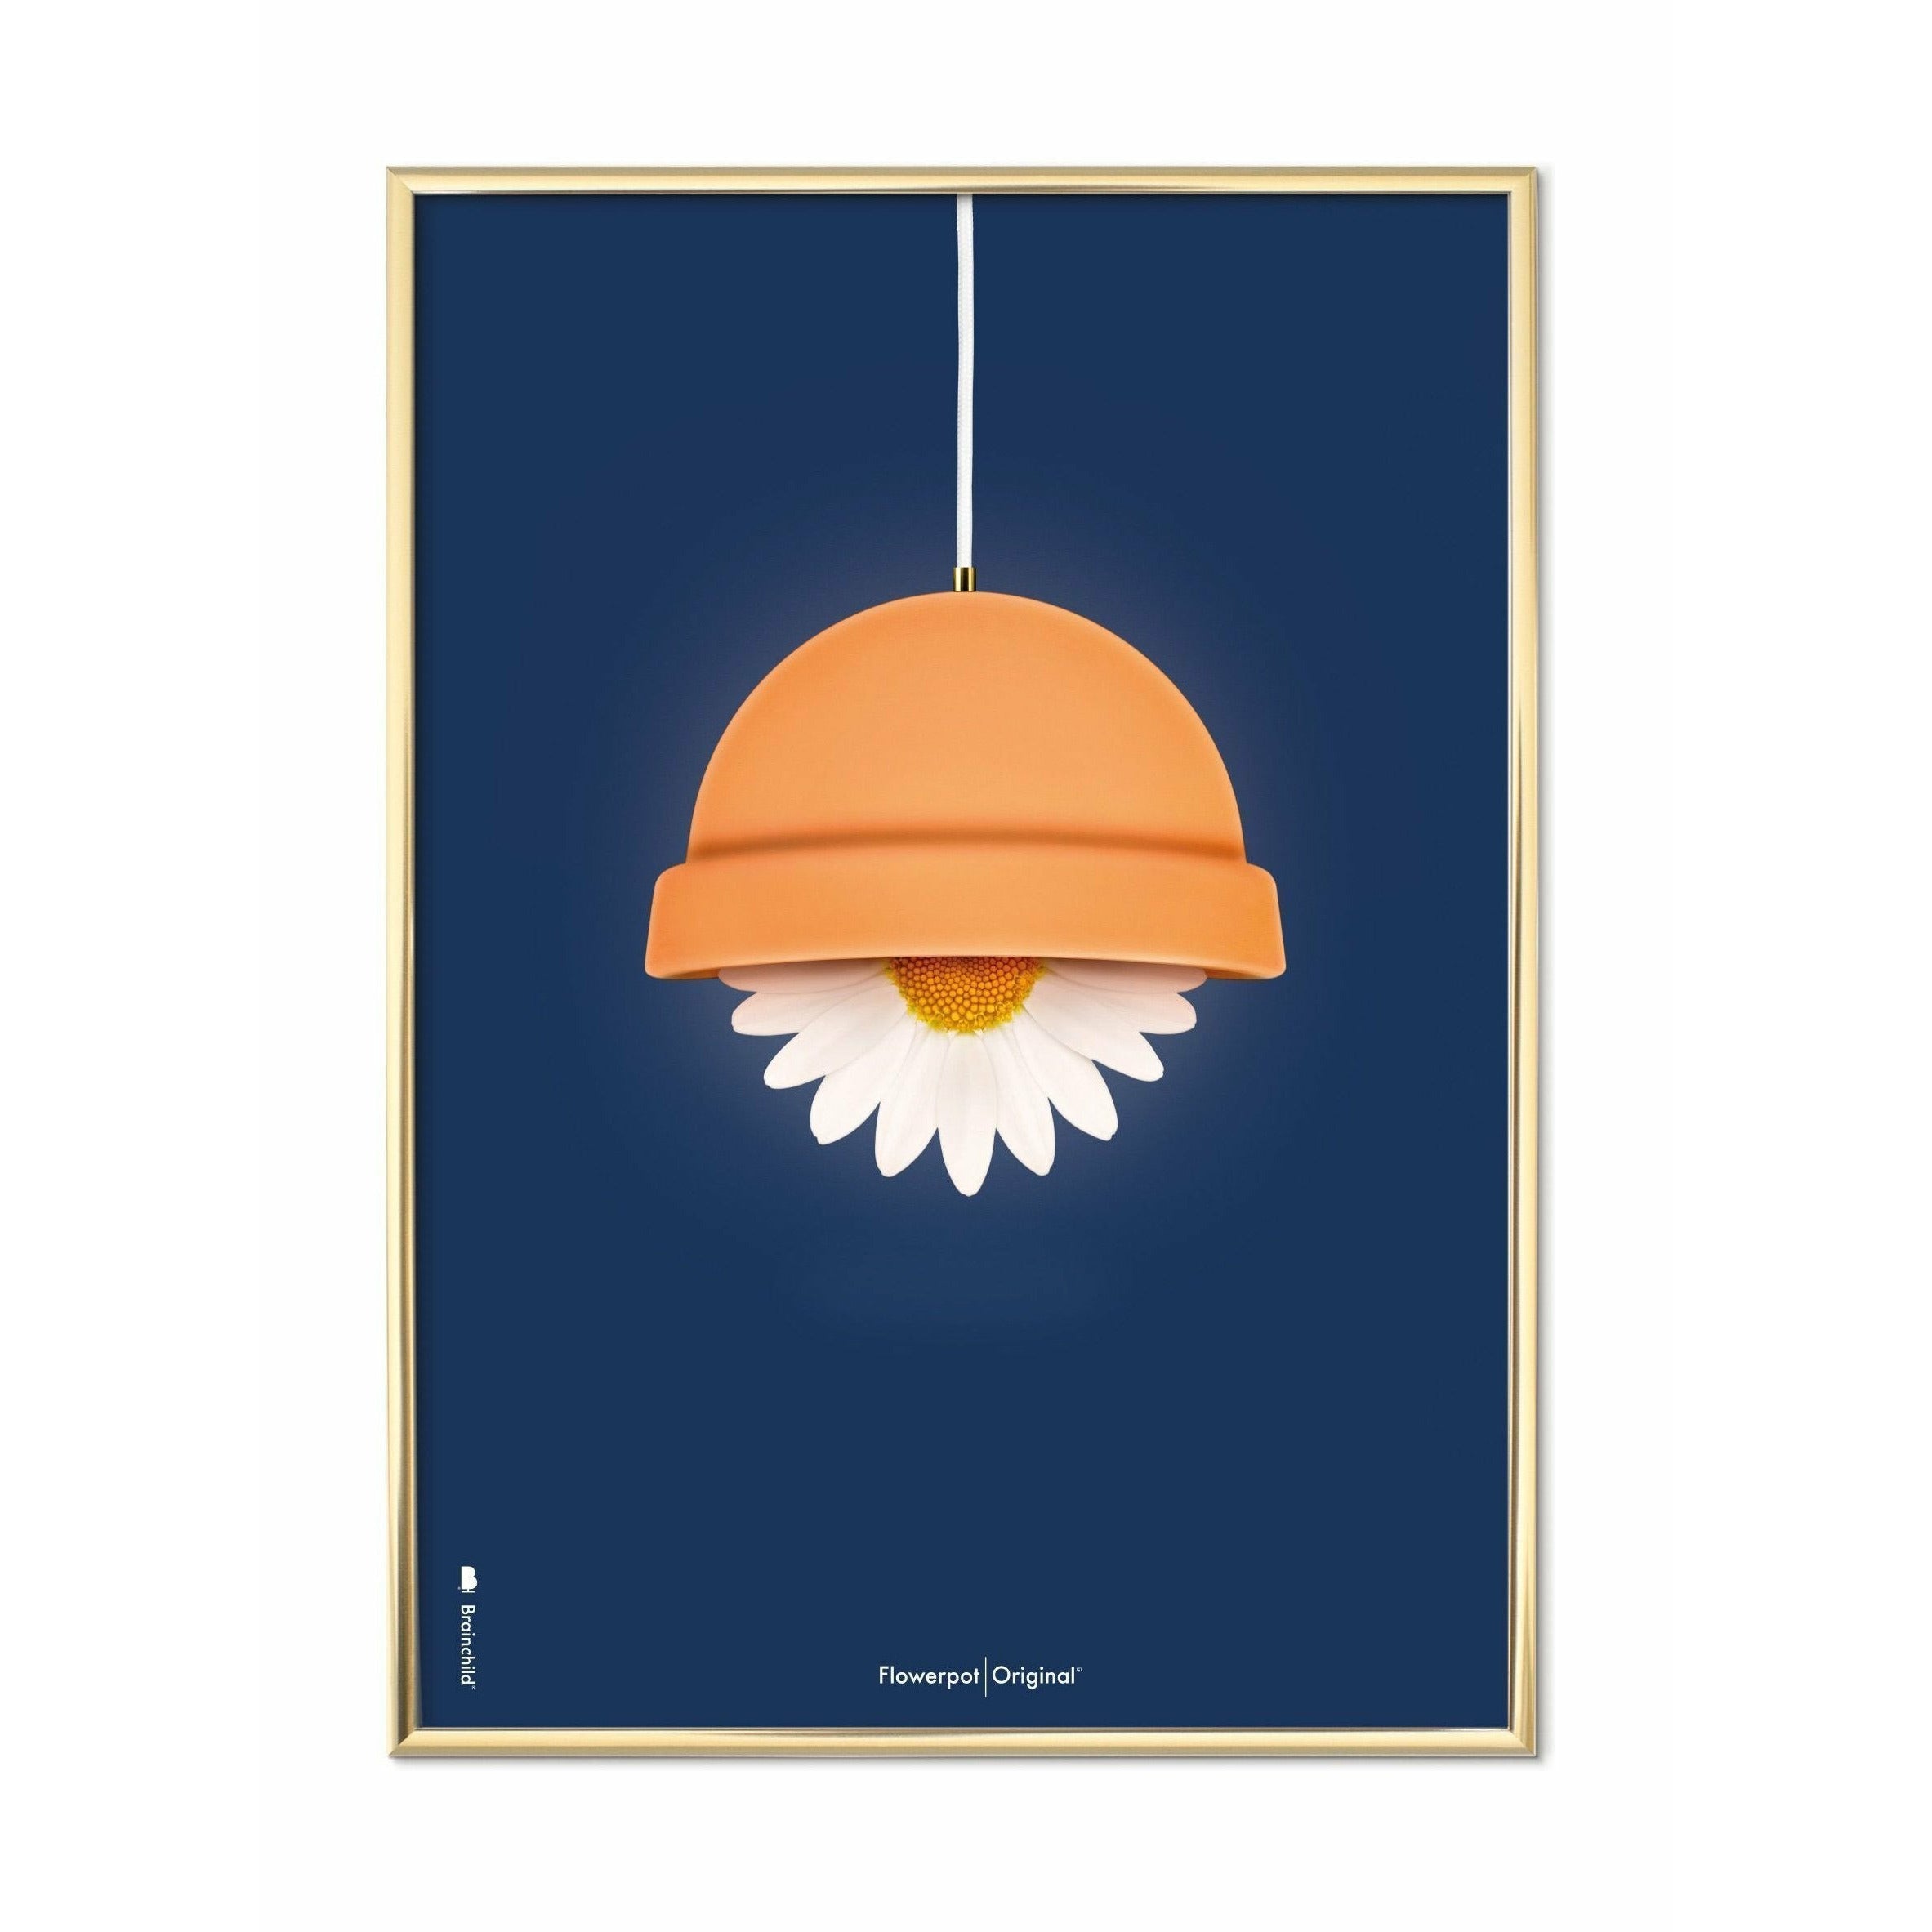 Klasický plakát Brainchild Flowerpot, mosazný barevný rám A5, tmavě modré pozadí